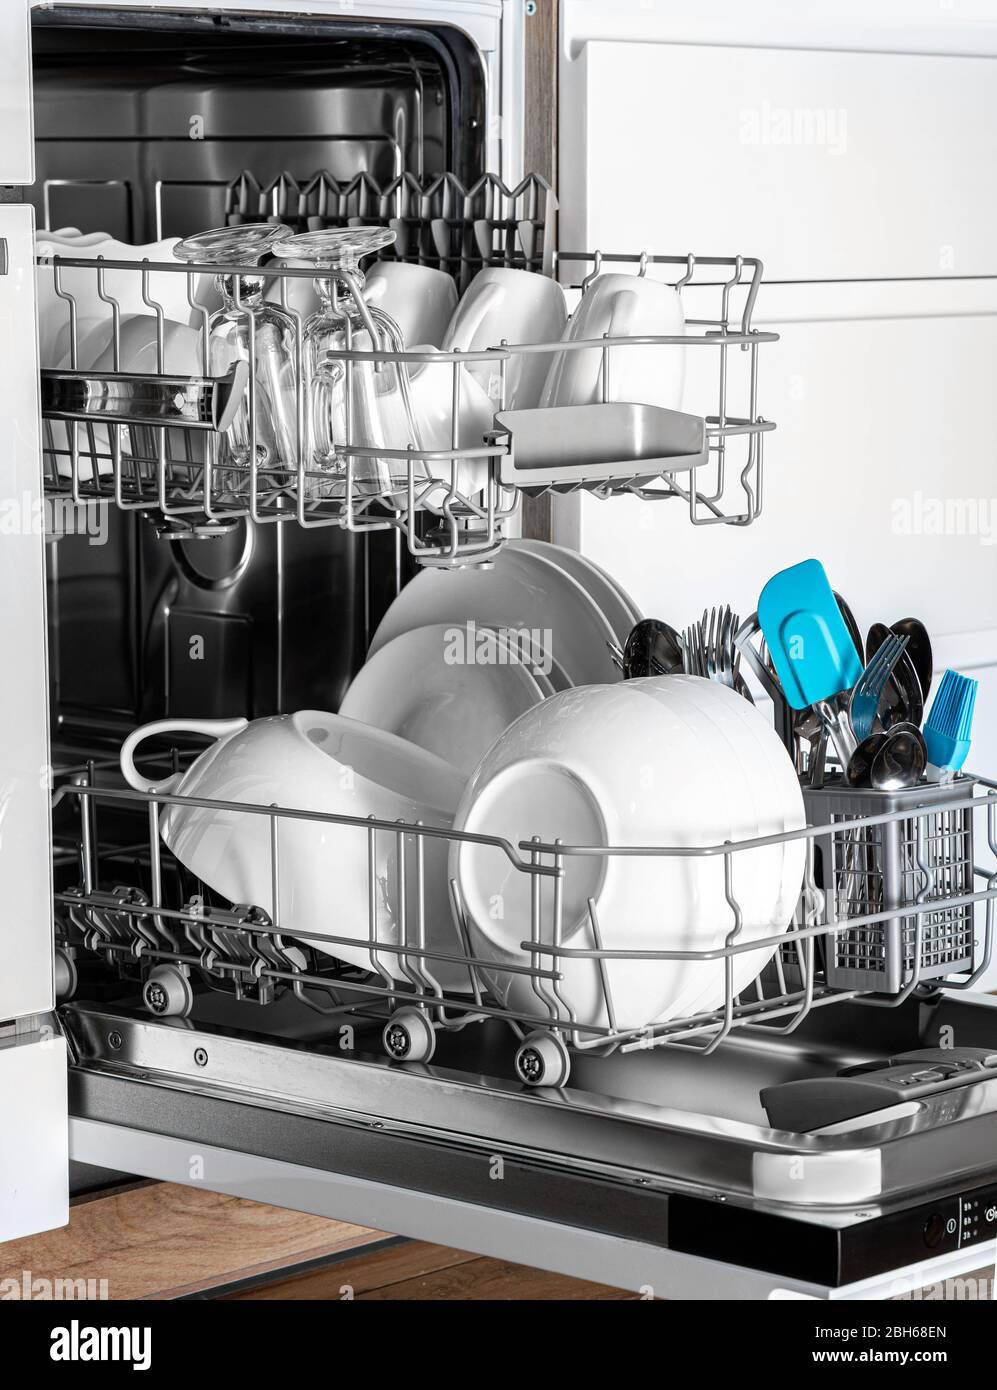 Nettoyez la vaisselle dans un lave-vaisselle à proximité. La machine aide les gens dans la vie quotidienne Banque D'Images